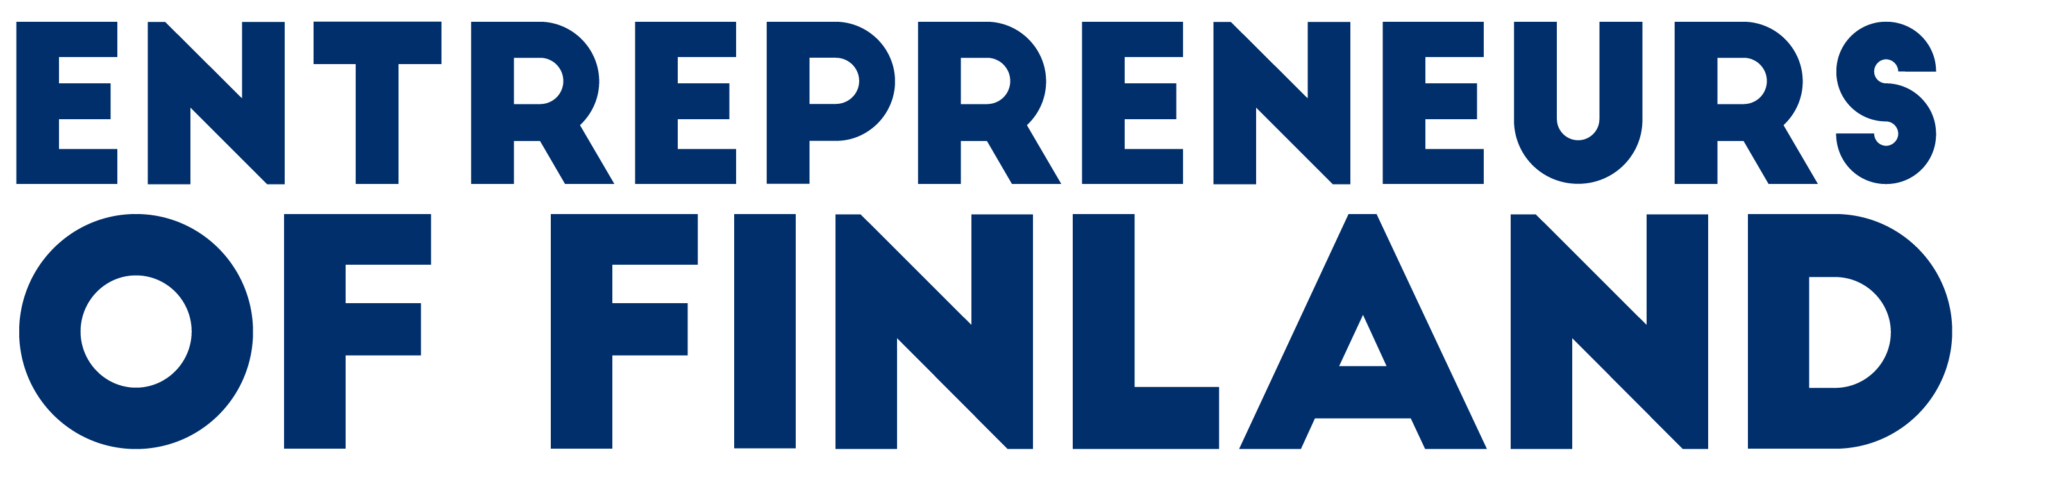 Entrepreneurs of Finland